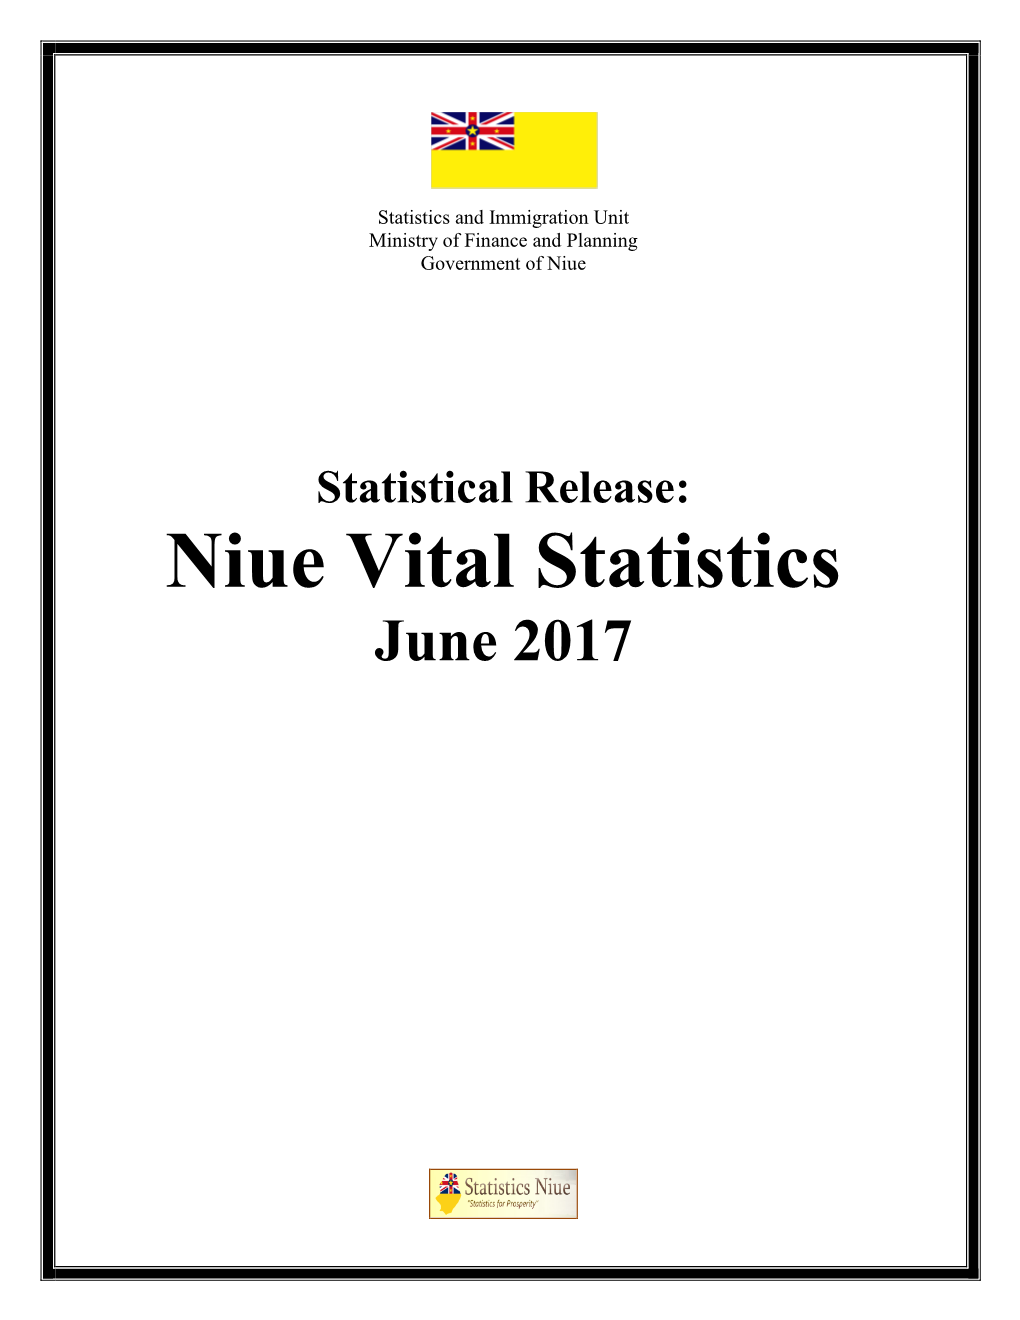 Niue Vital Statistics, January